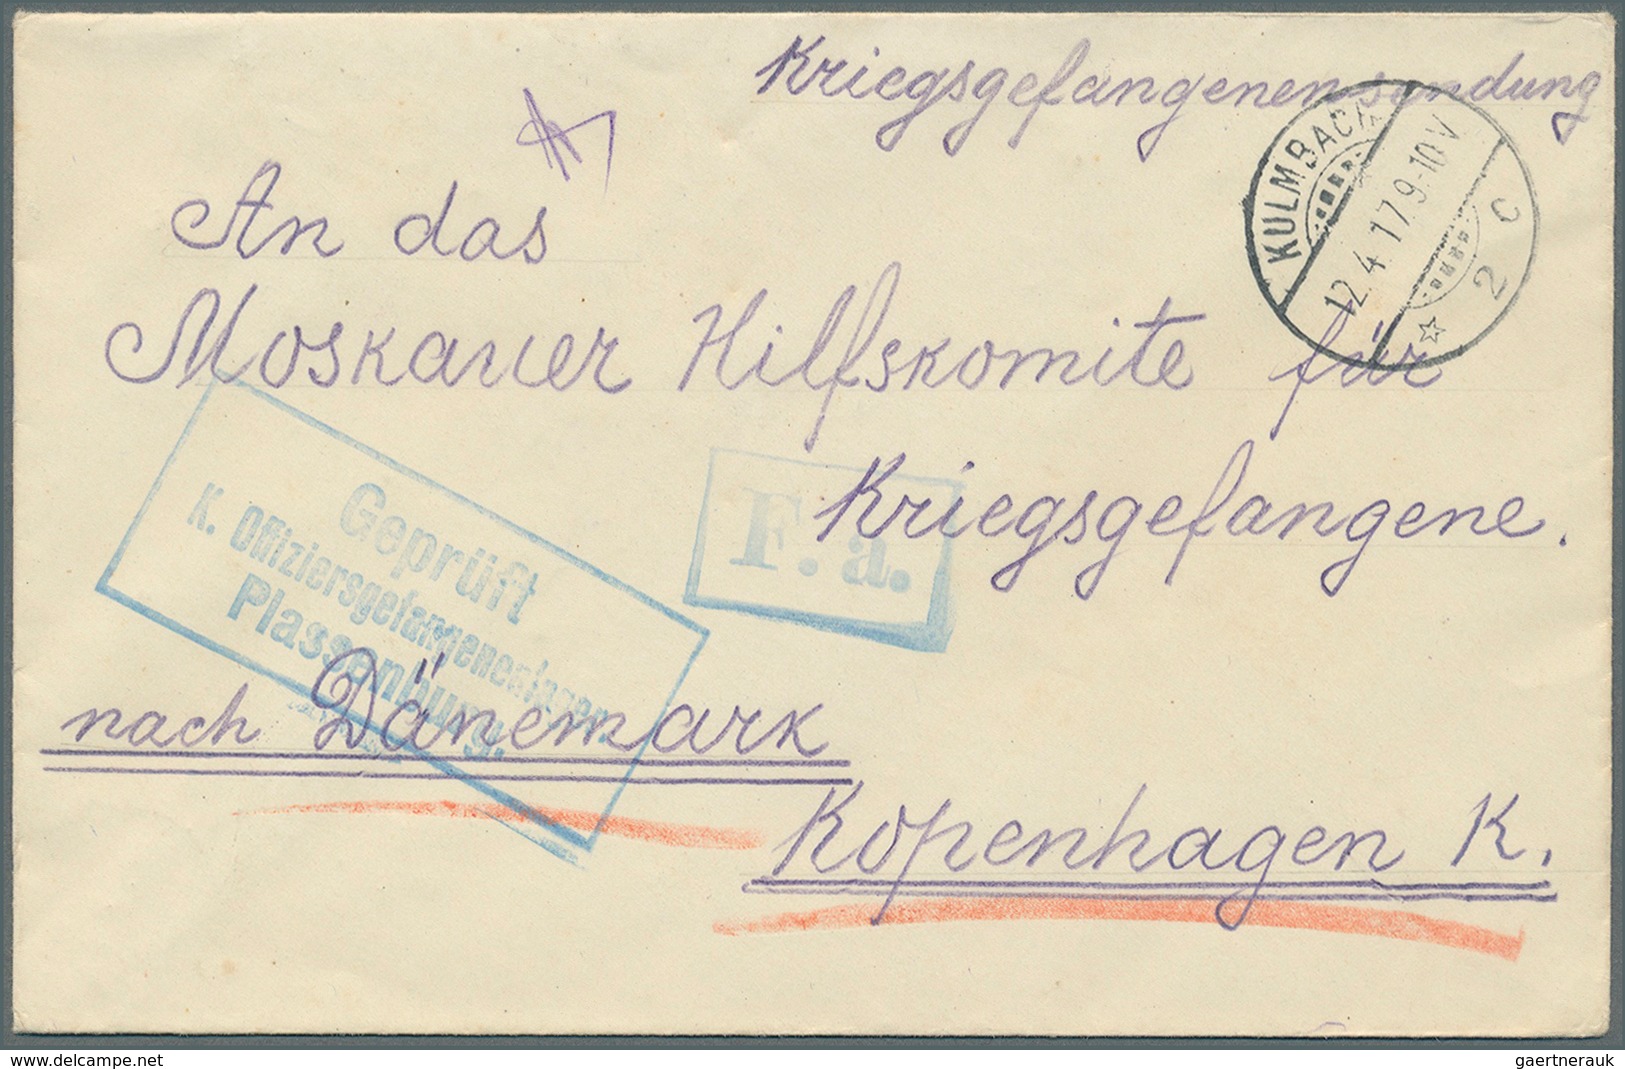 Bayern - Besonderheiten: 1895/1935 ca., über 140 Briefe, Karten, Formulare, Vignetten, die im weites